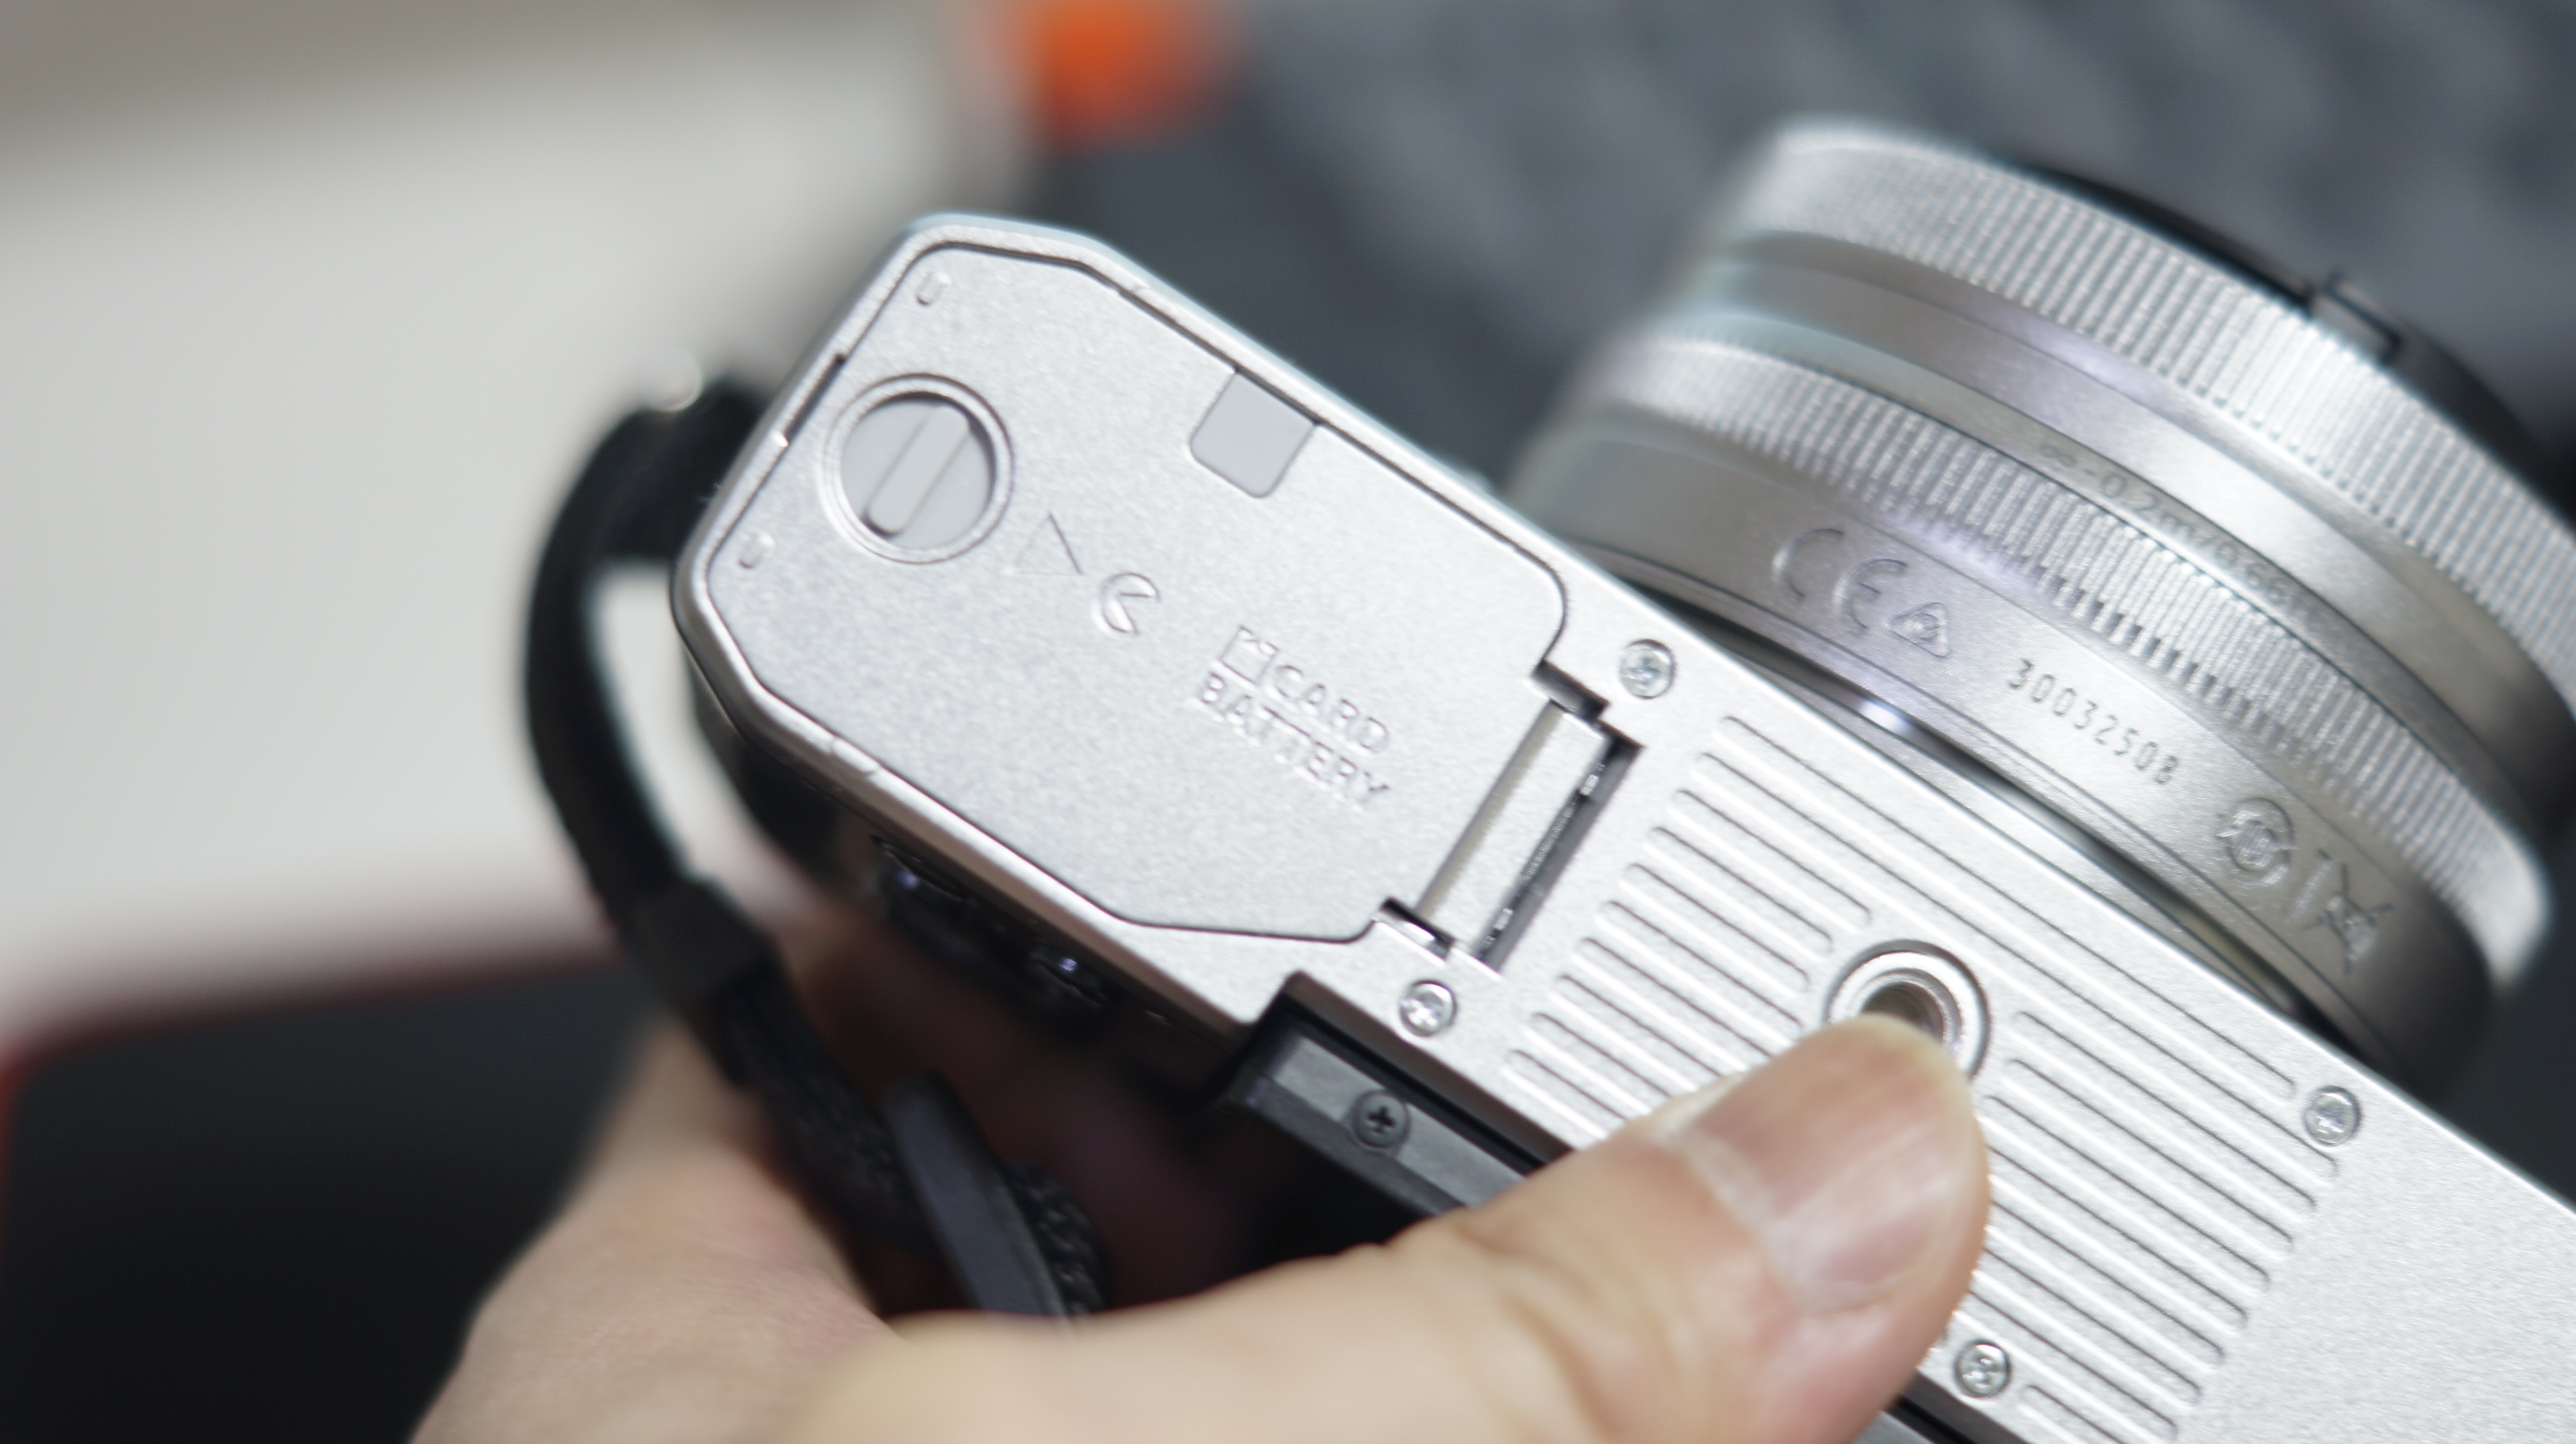 니콘 Zfc 레트로 디자인의 미러리스 디지털카메라 개봉기 사진11